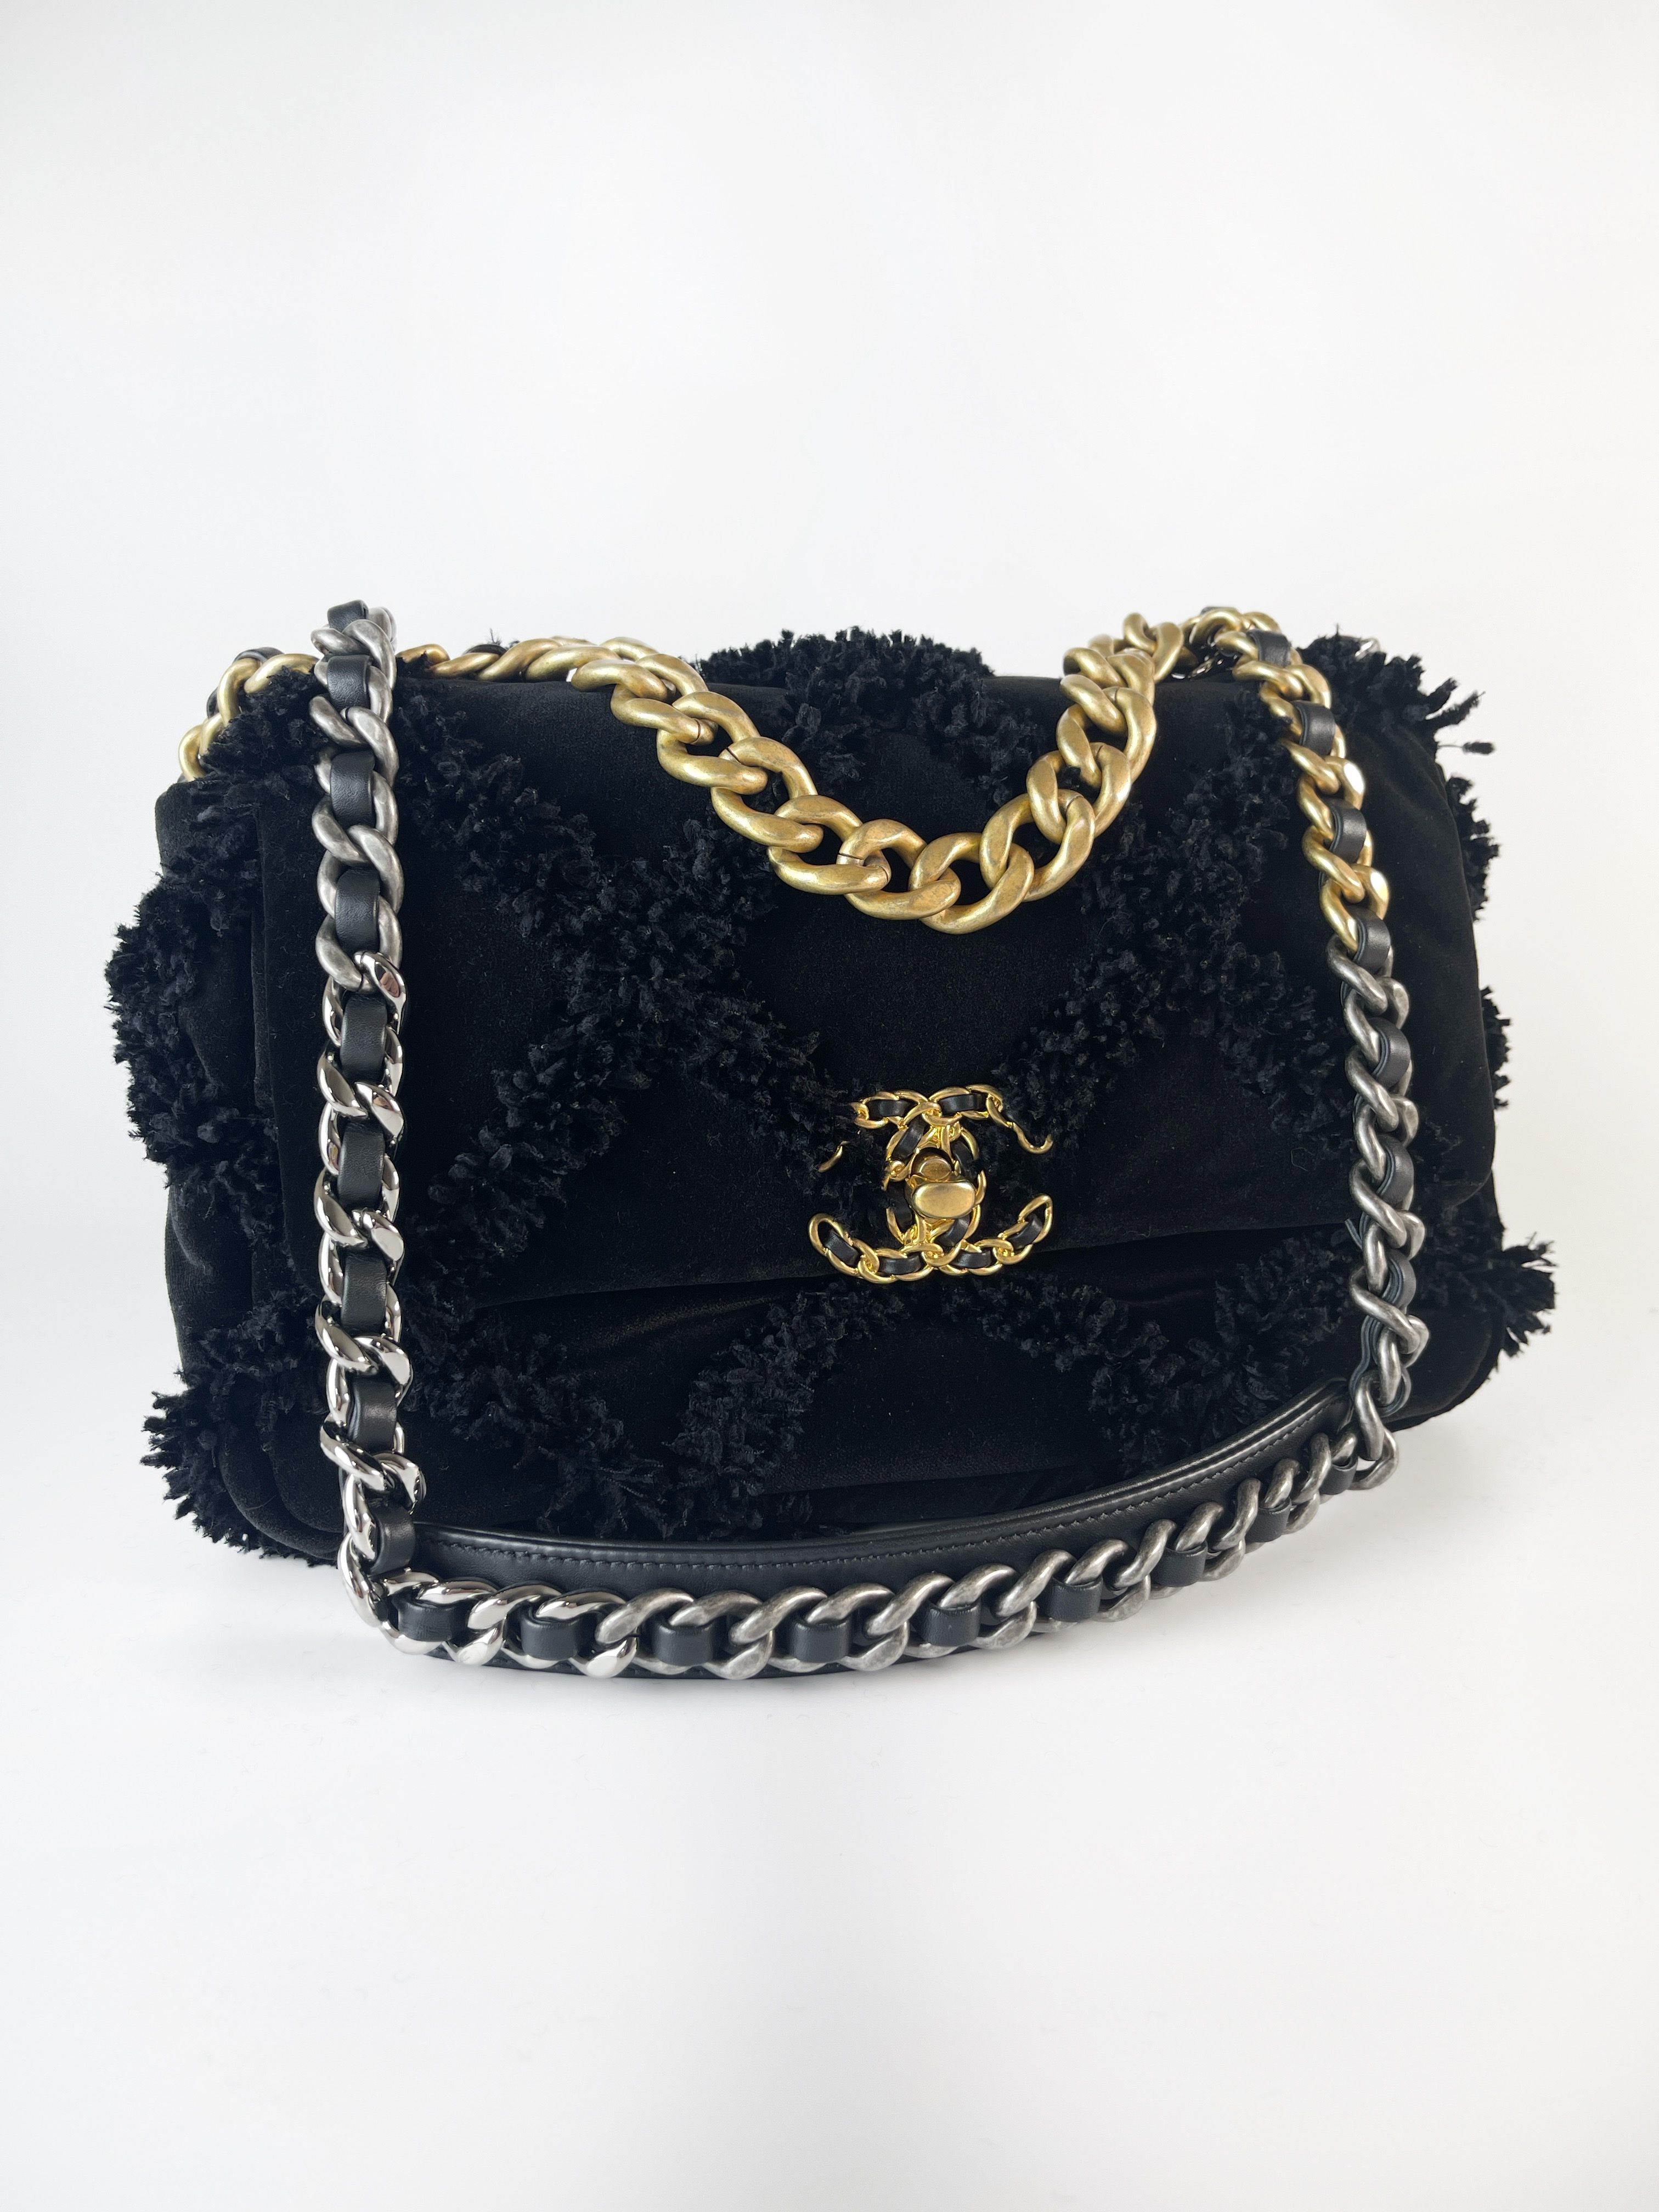 CHANEL cowhide leather Vintage Bag gold buckle handle shoulder bag ...